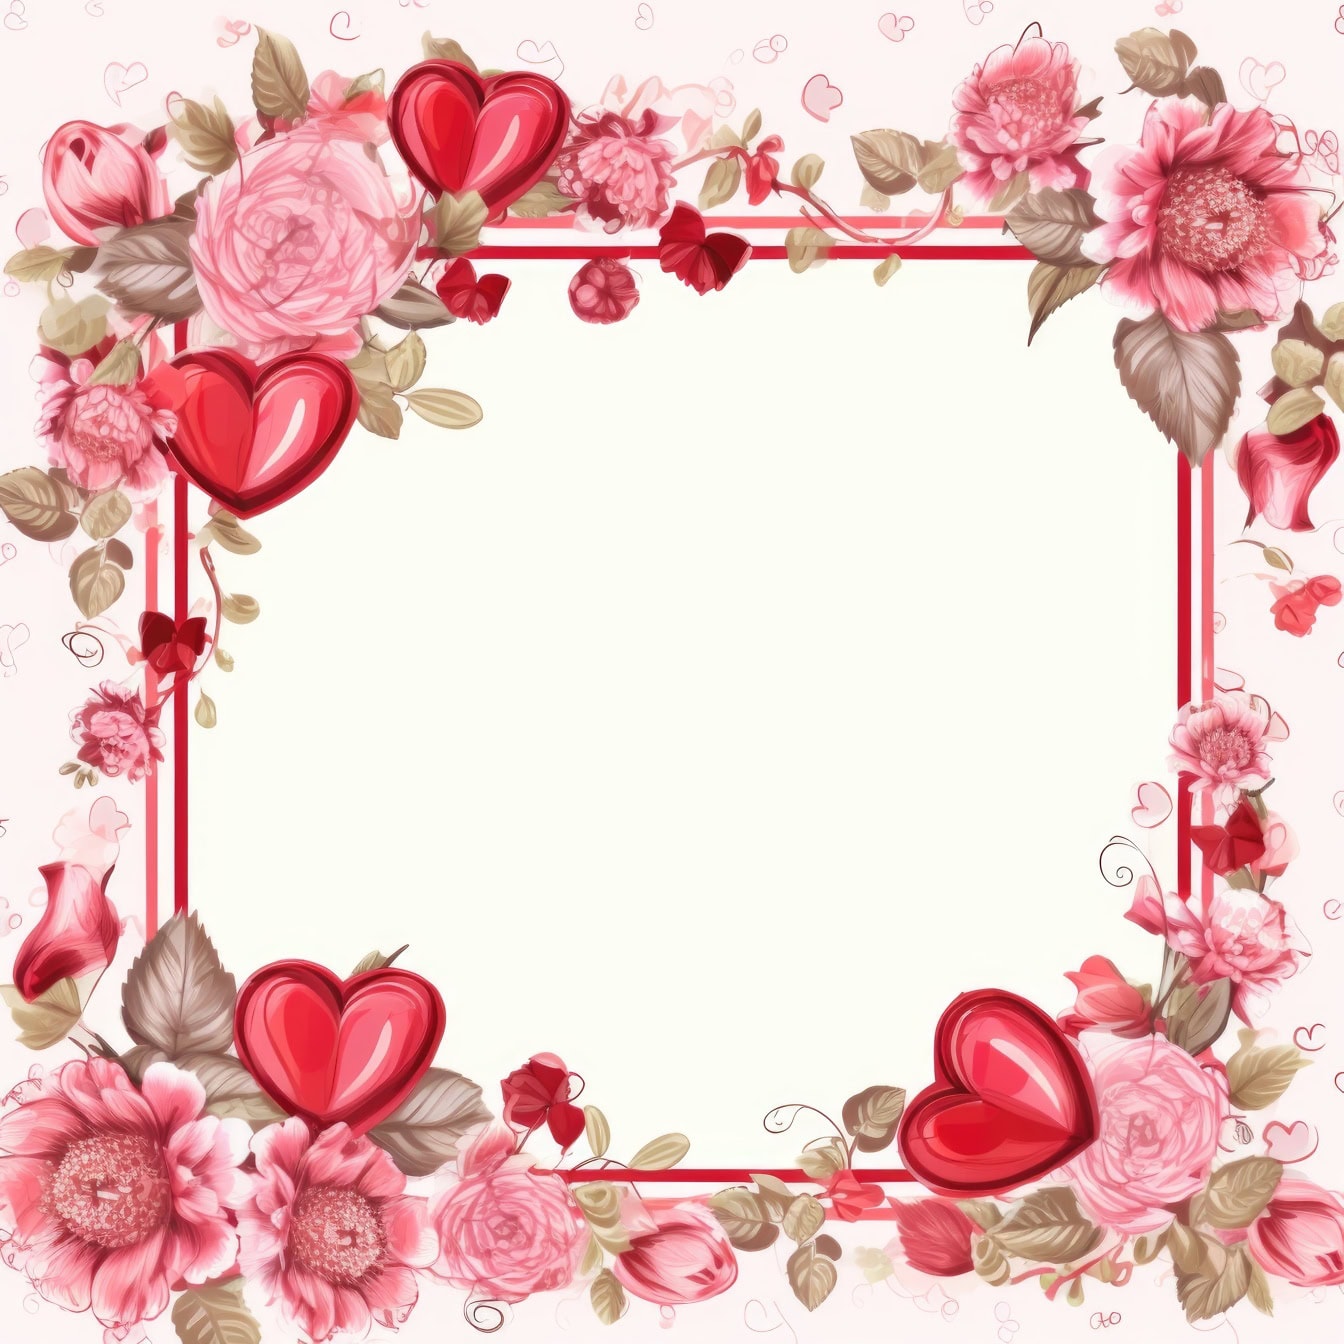 การ์ดอวยพรโรแมนติกกรอบสี่เหลี่ยมดอกไม้และหัวใจสีชมพู